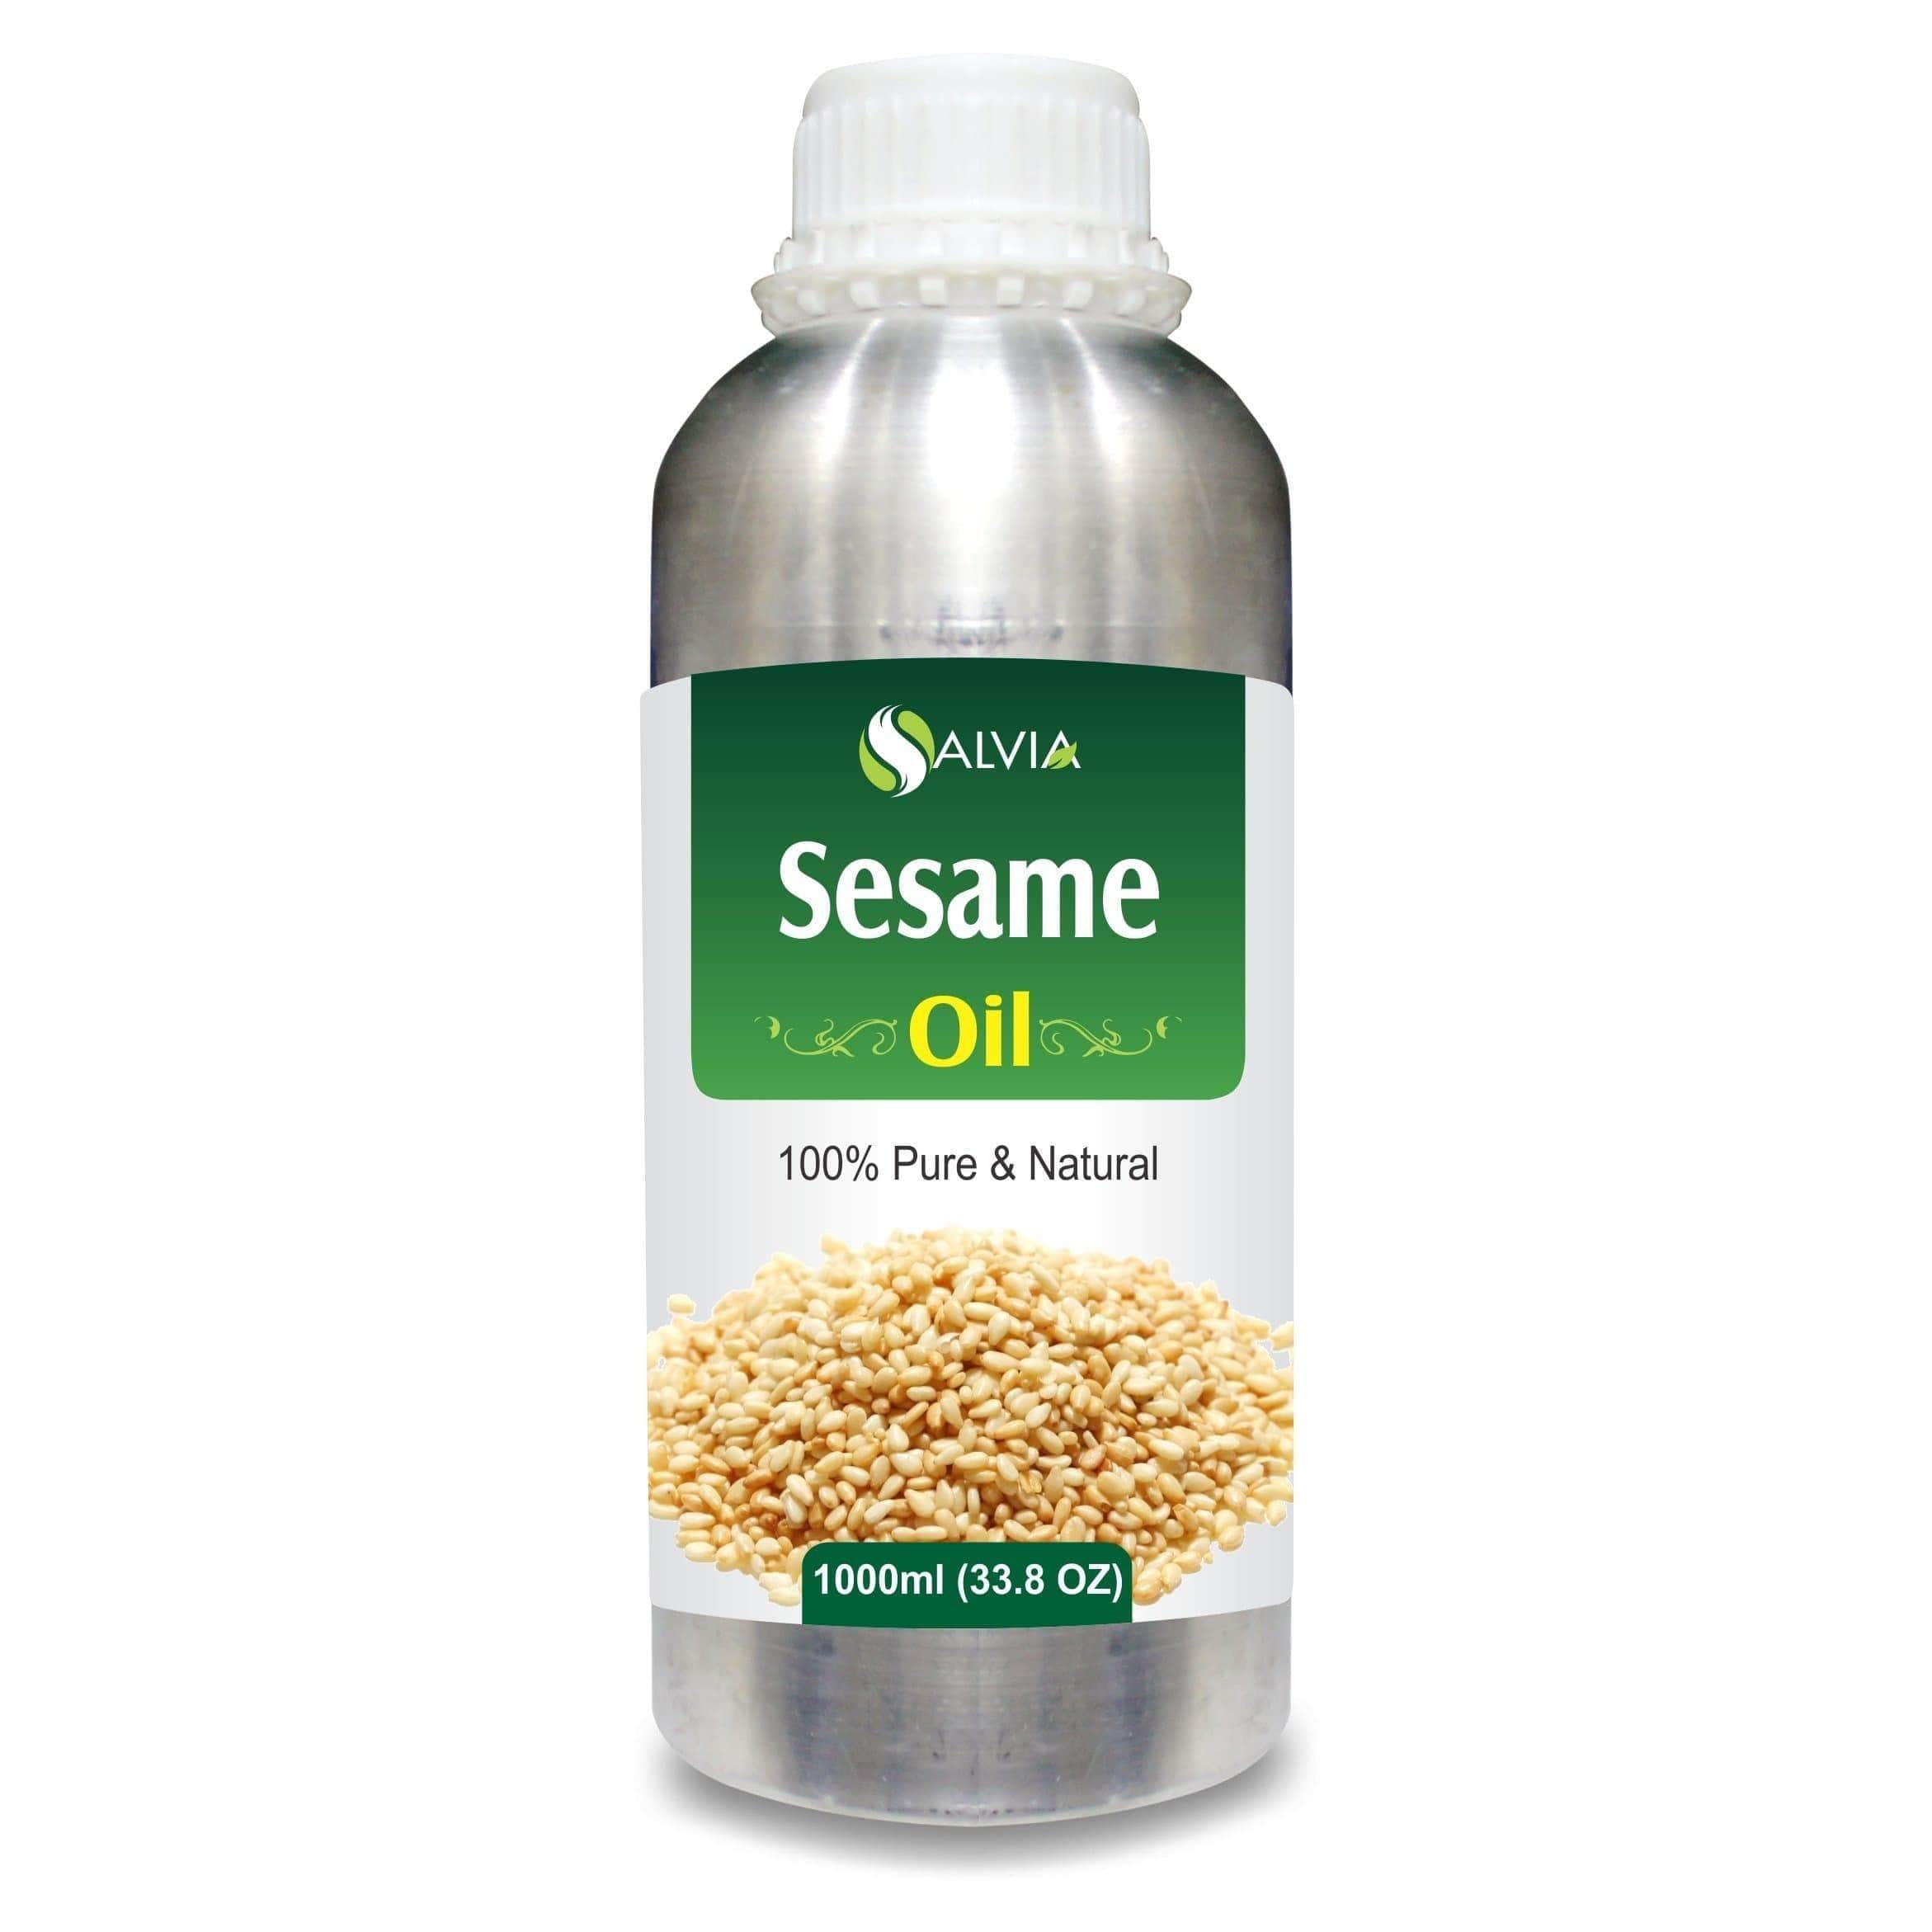 sesame oil in hindi